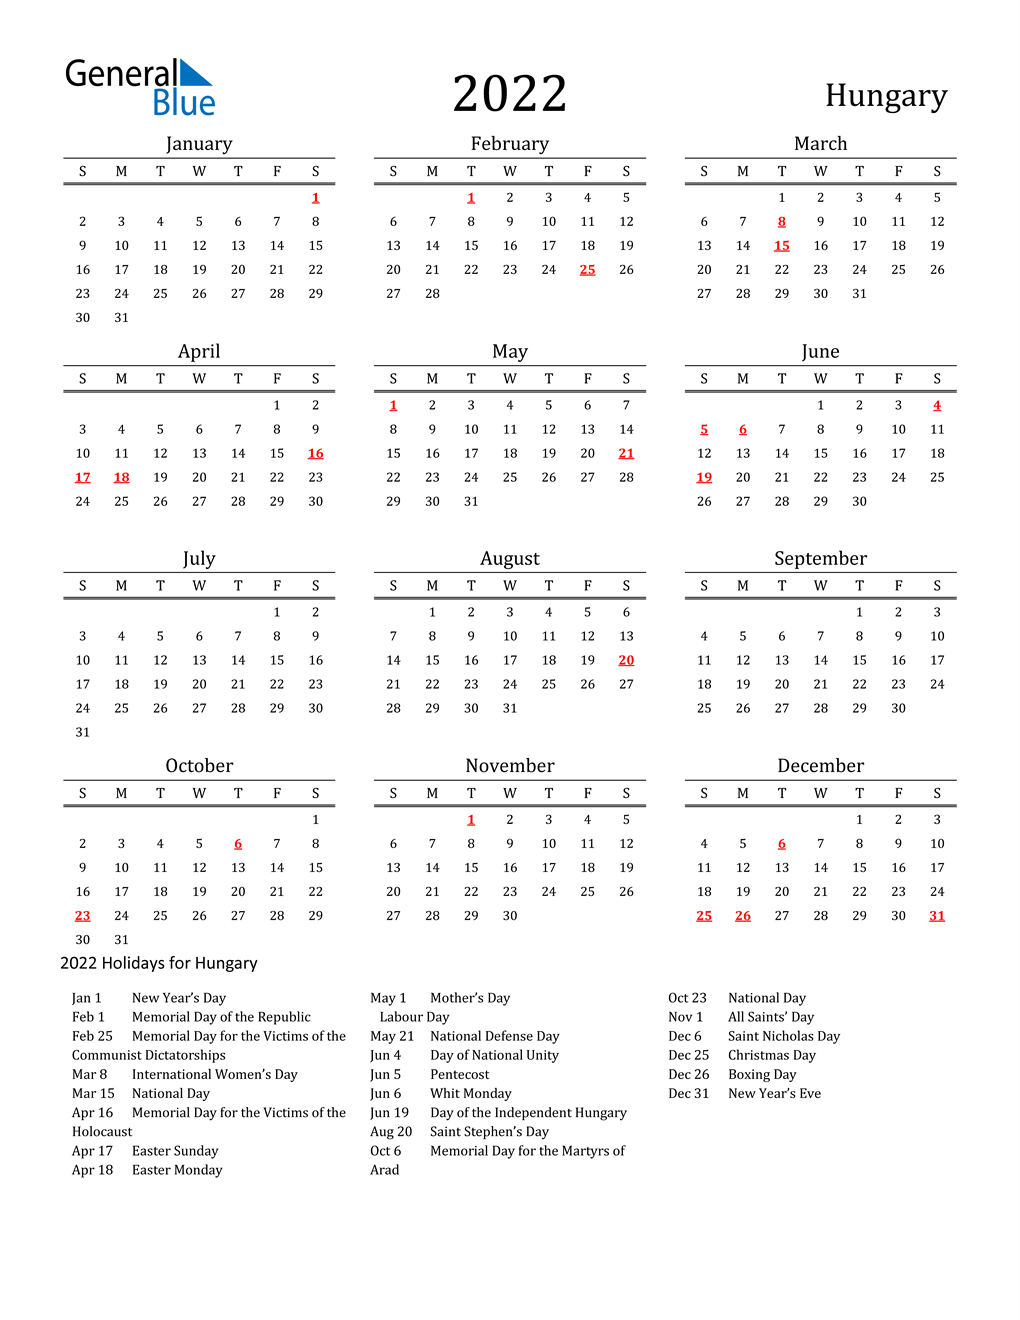 Hungary Holidays Calendar for 2022